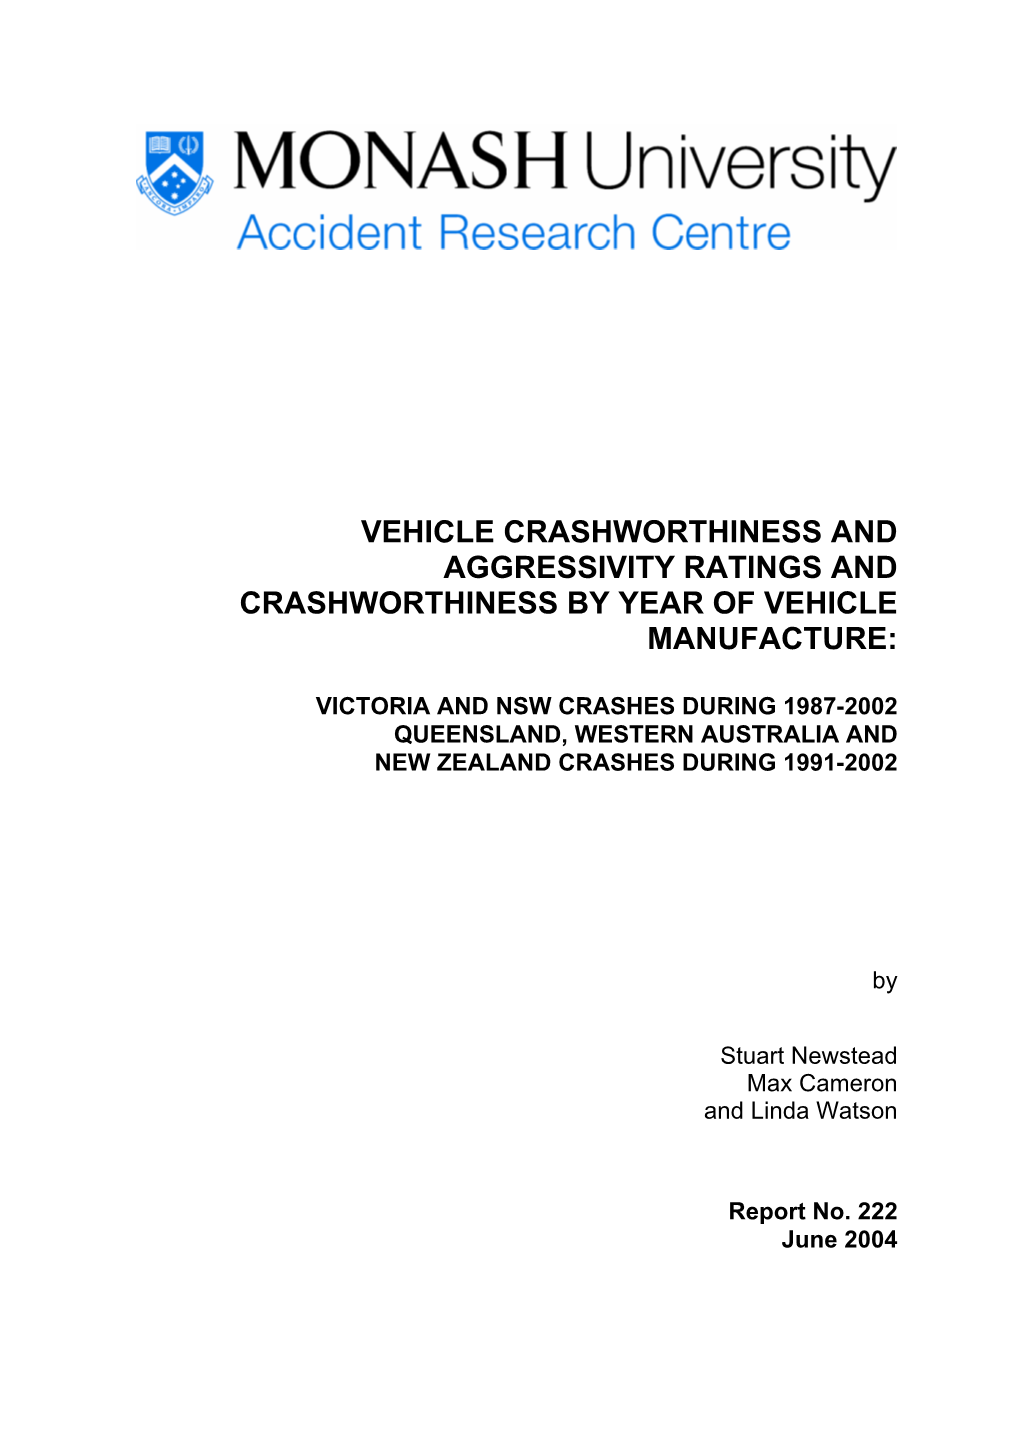 Vehicle Crashworthiness and Aggressivity Ratings and Crashworthiness by Year of Vehicle Manufacture